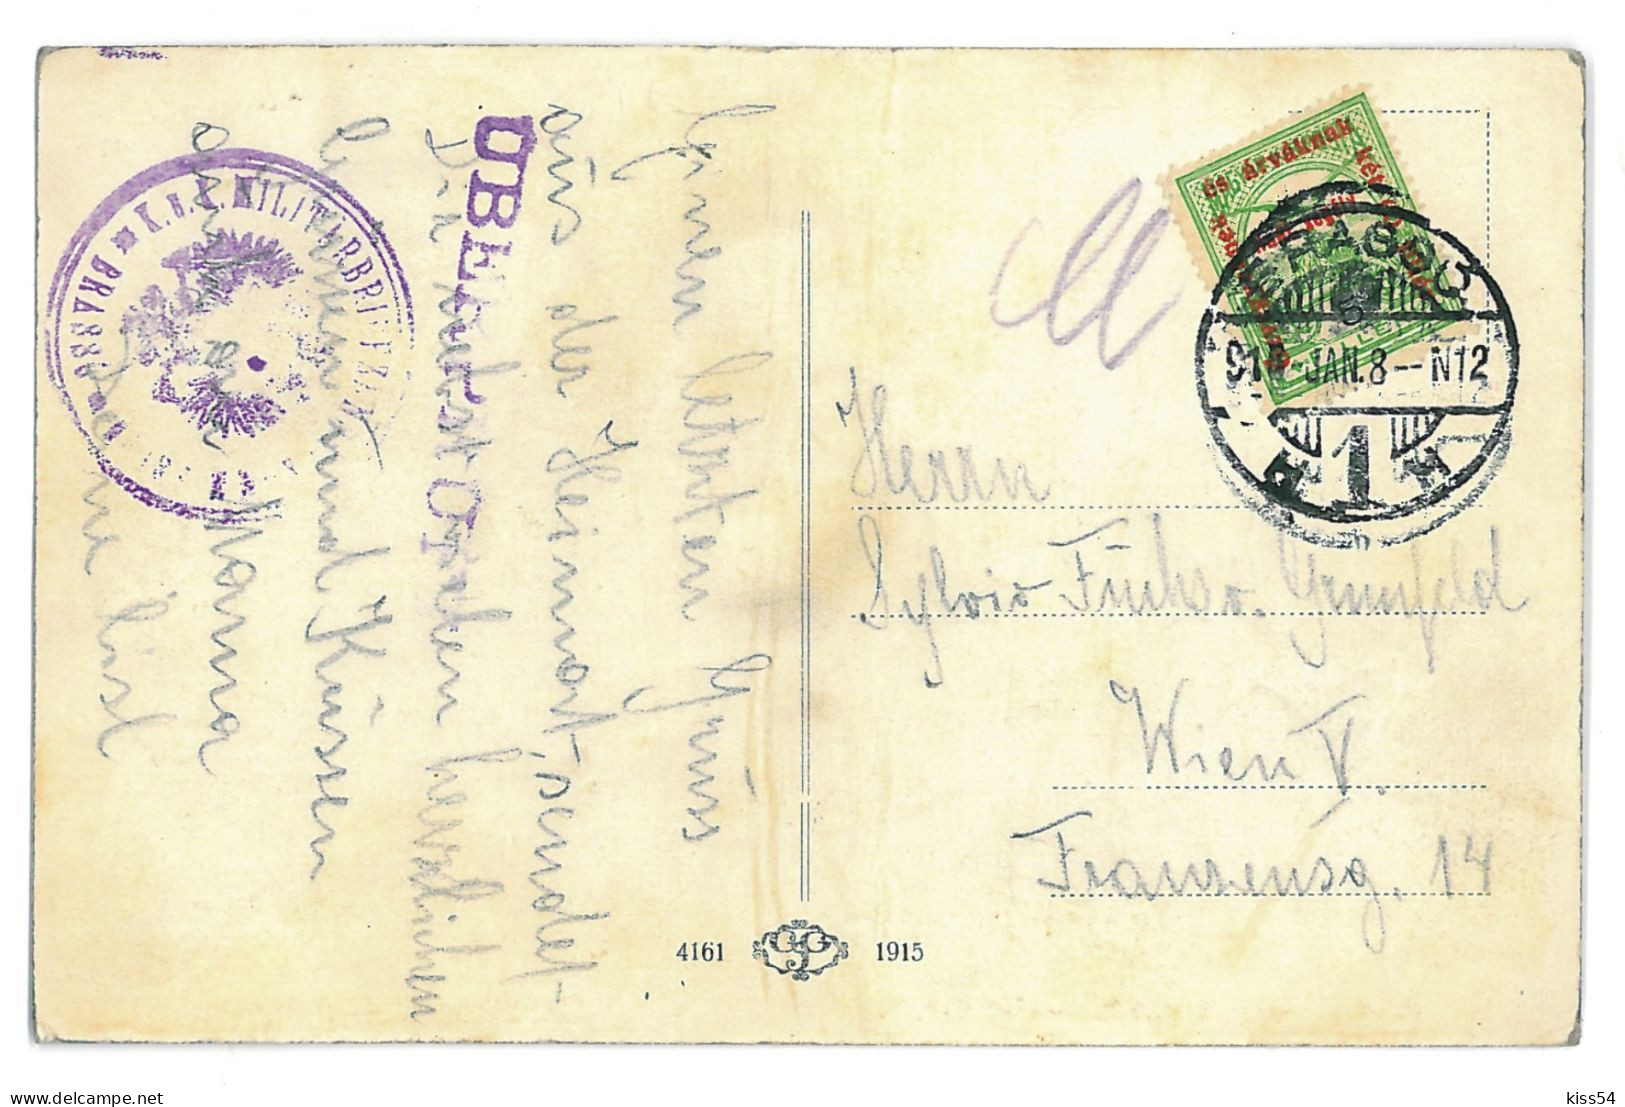 RO 86 - 10992 BRASOV, Romania, Panorama - Old Postcard, CENSOR - Used - 1916 - Roumanie